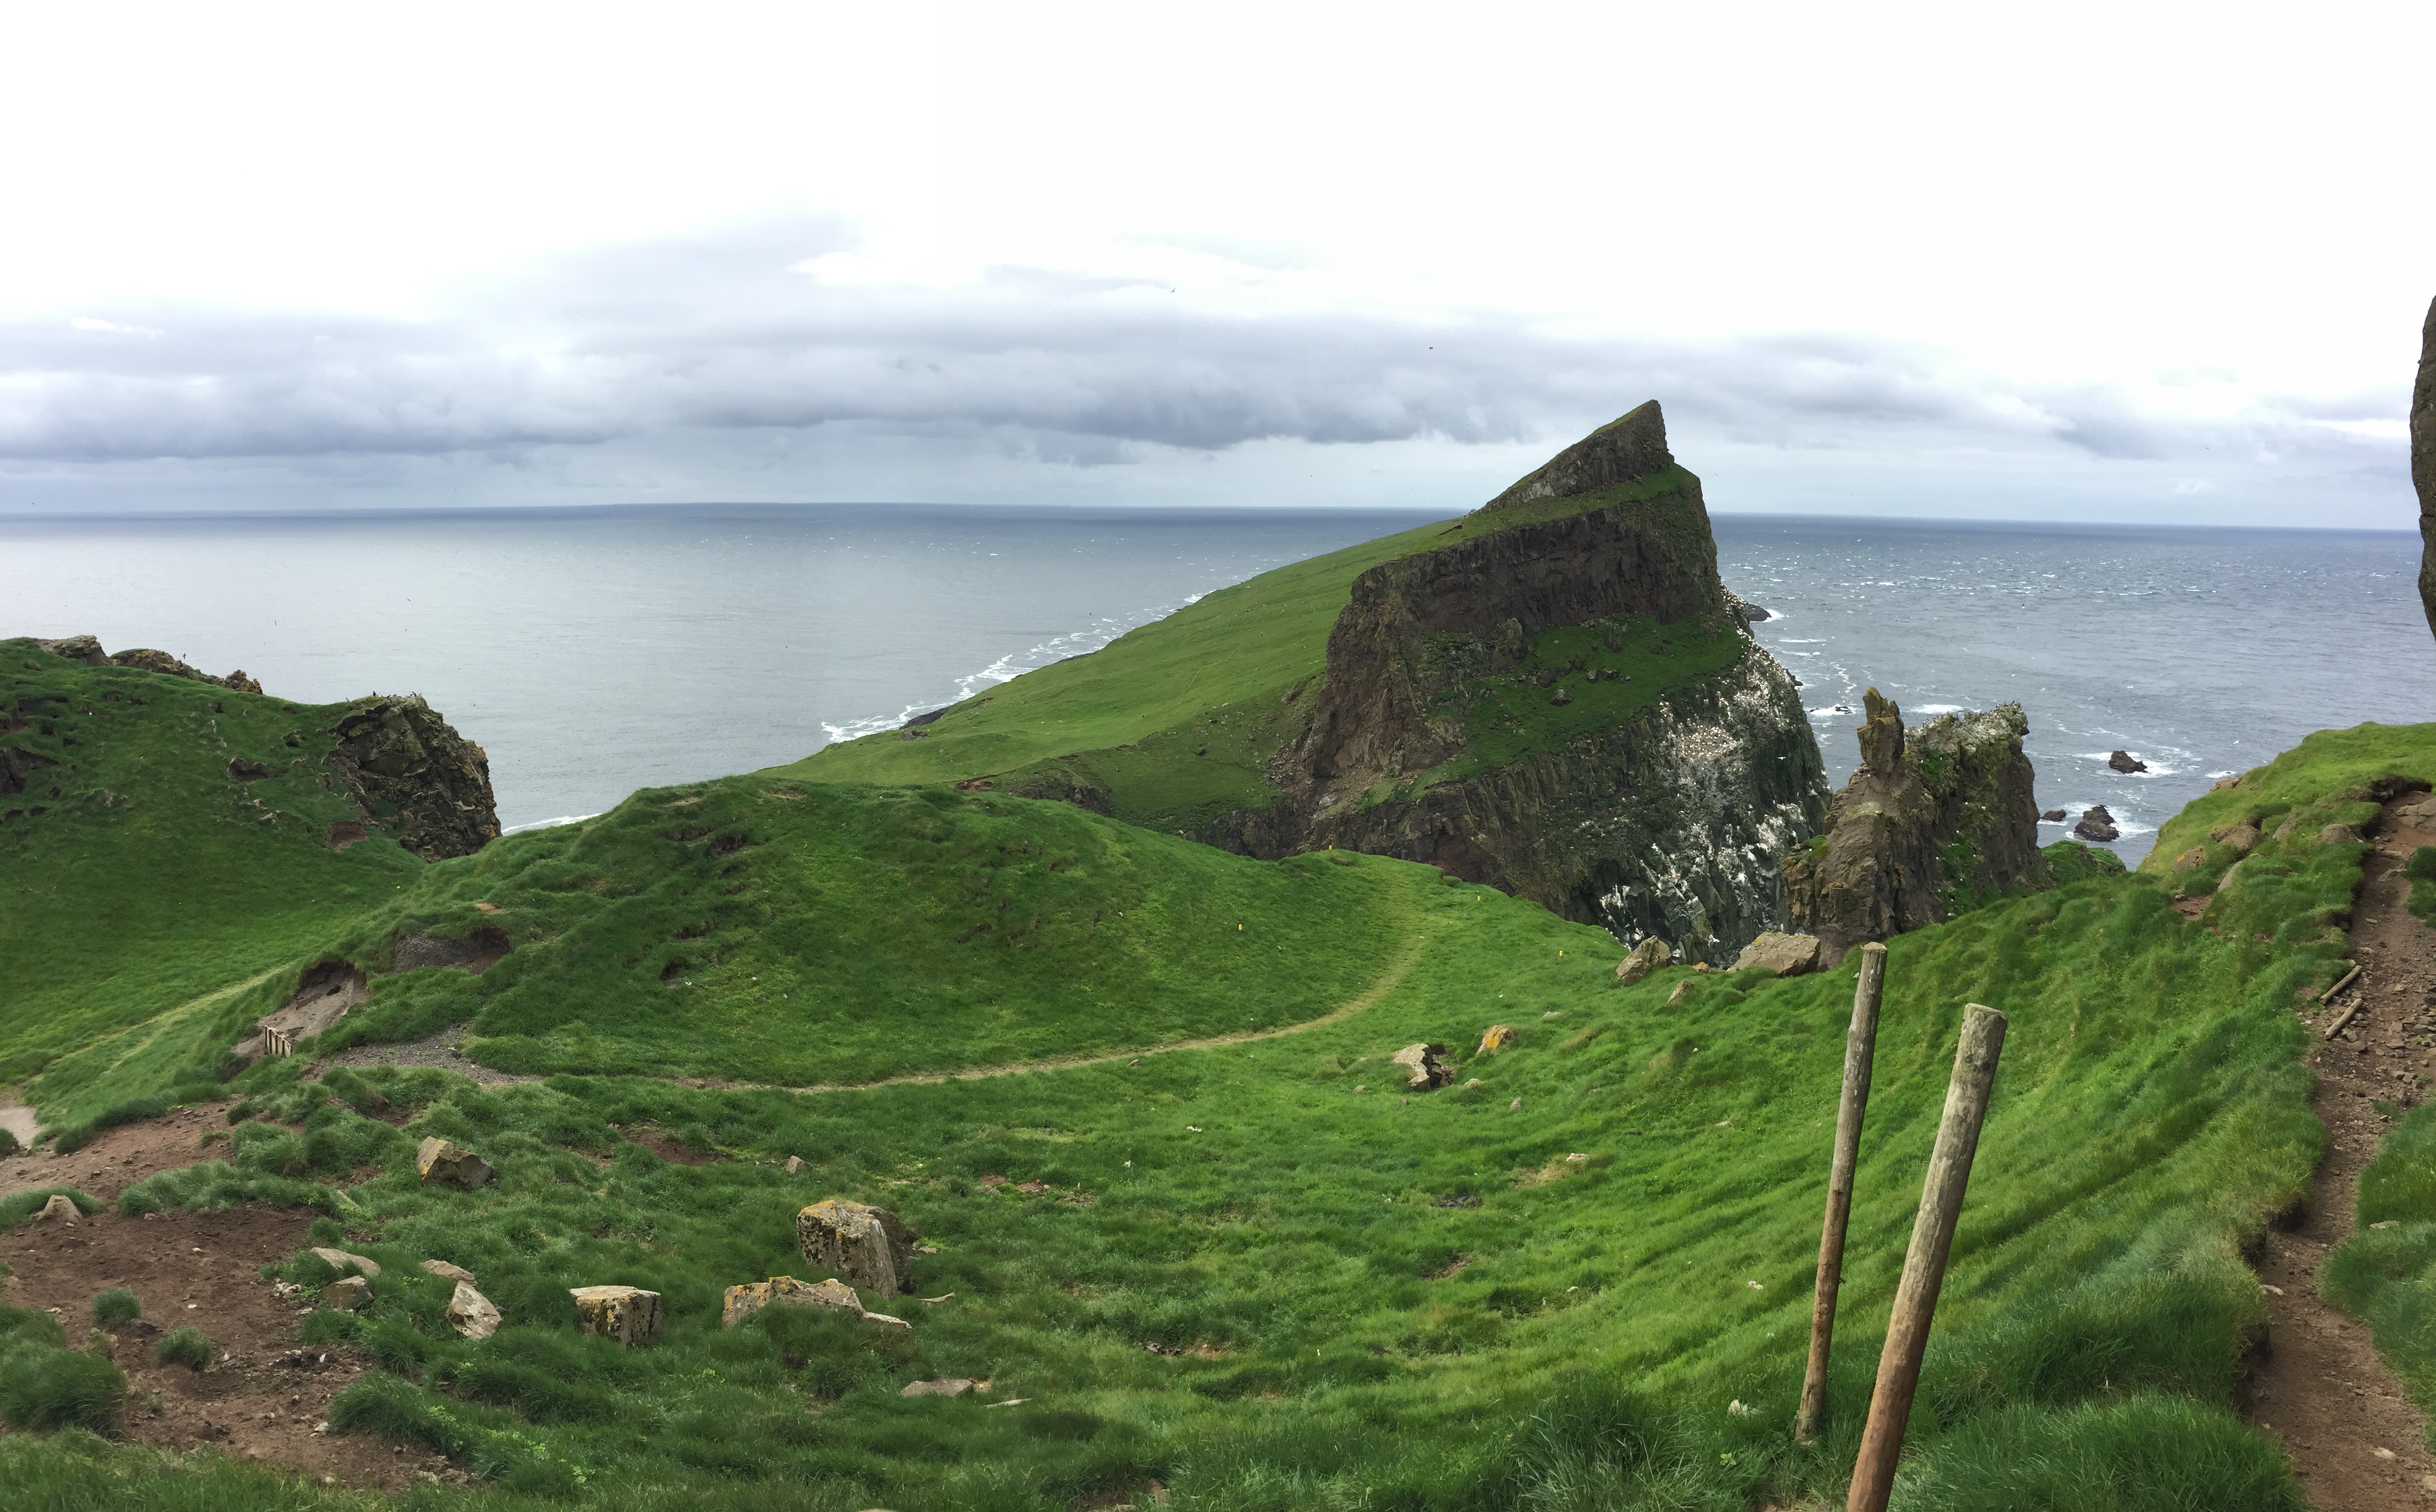 Diario de Viaje Islas Feroe - El Reino de Thor - Blogs de Dinamarca - DIA 2 - Mykines, el hogar de los frailecillos (9)